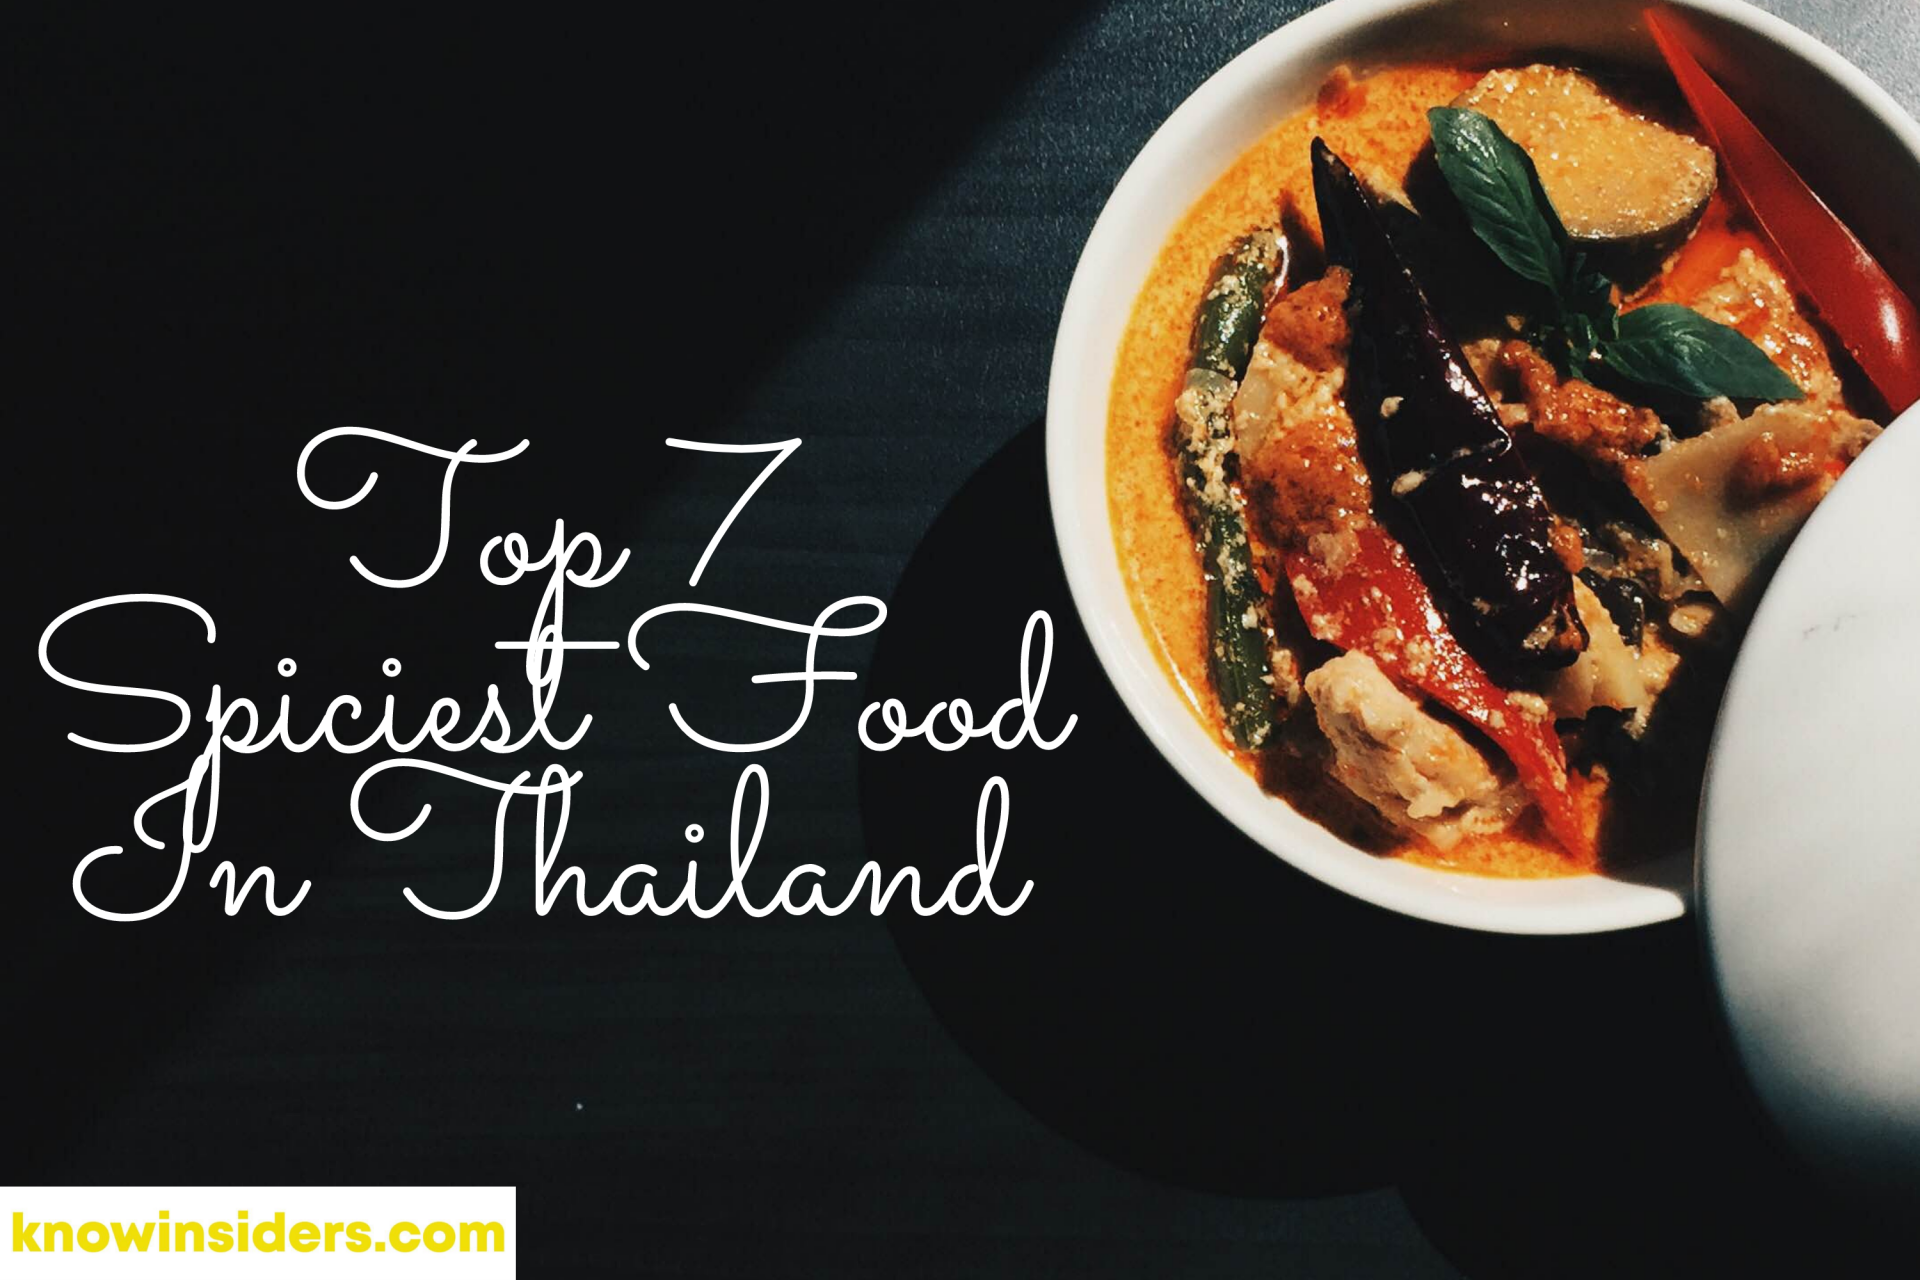 Top 7 Spiciest Foods in Thailand